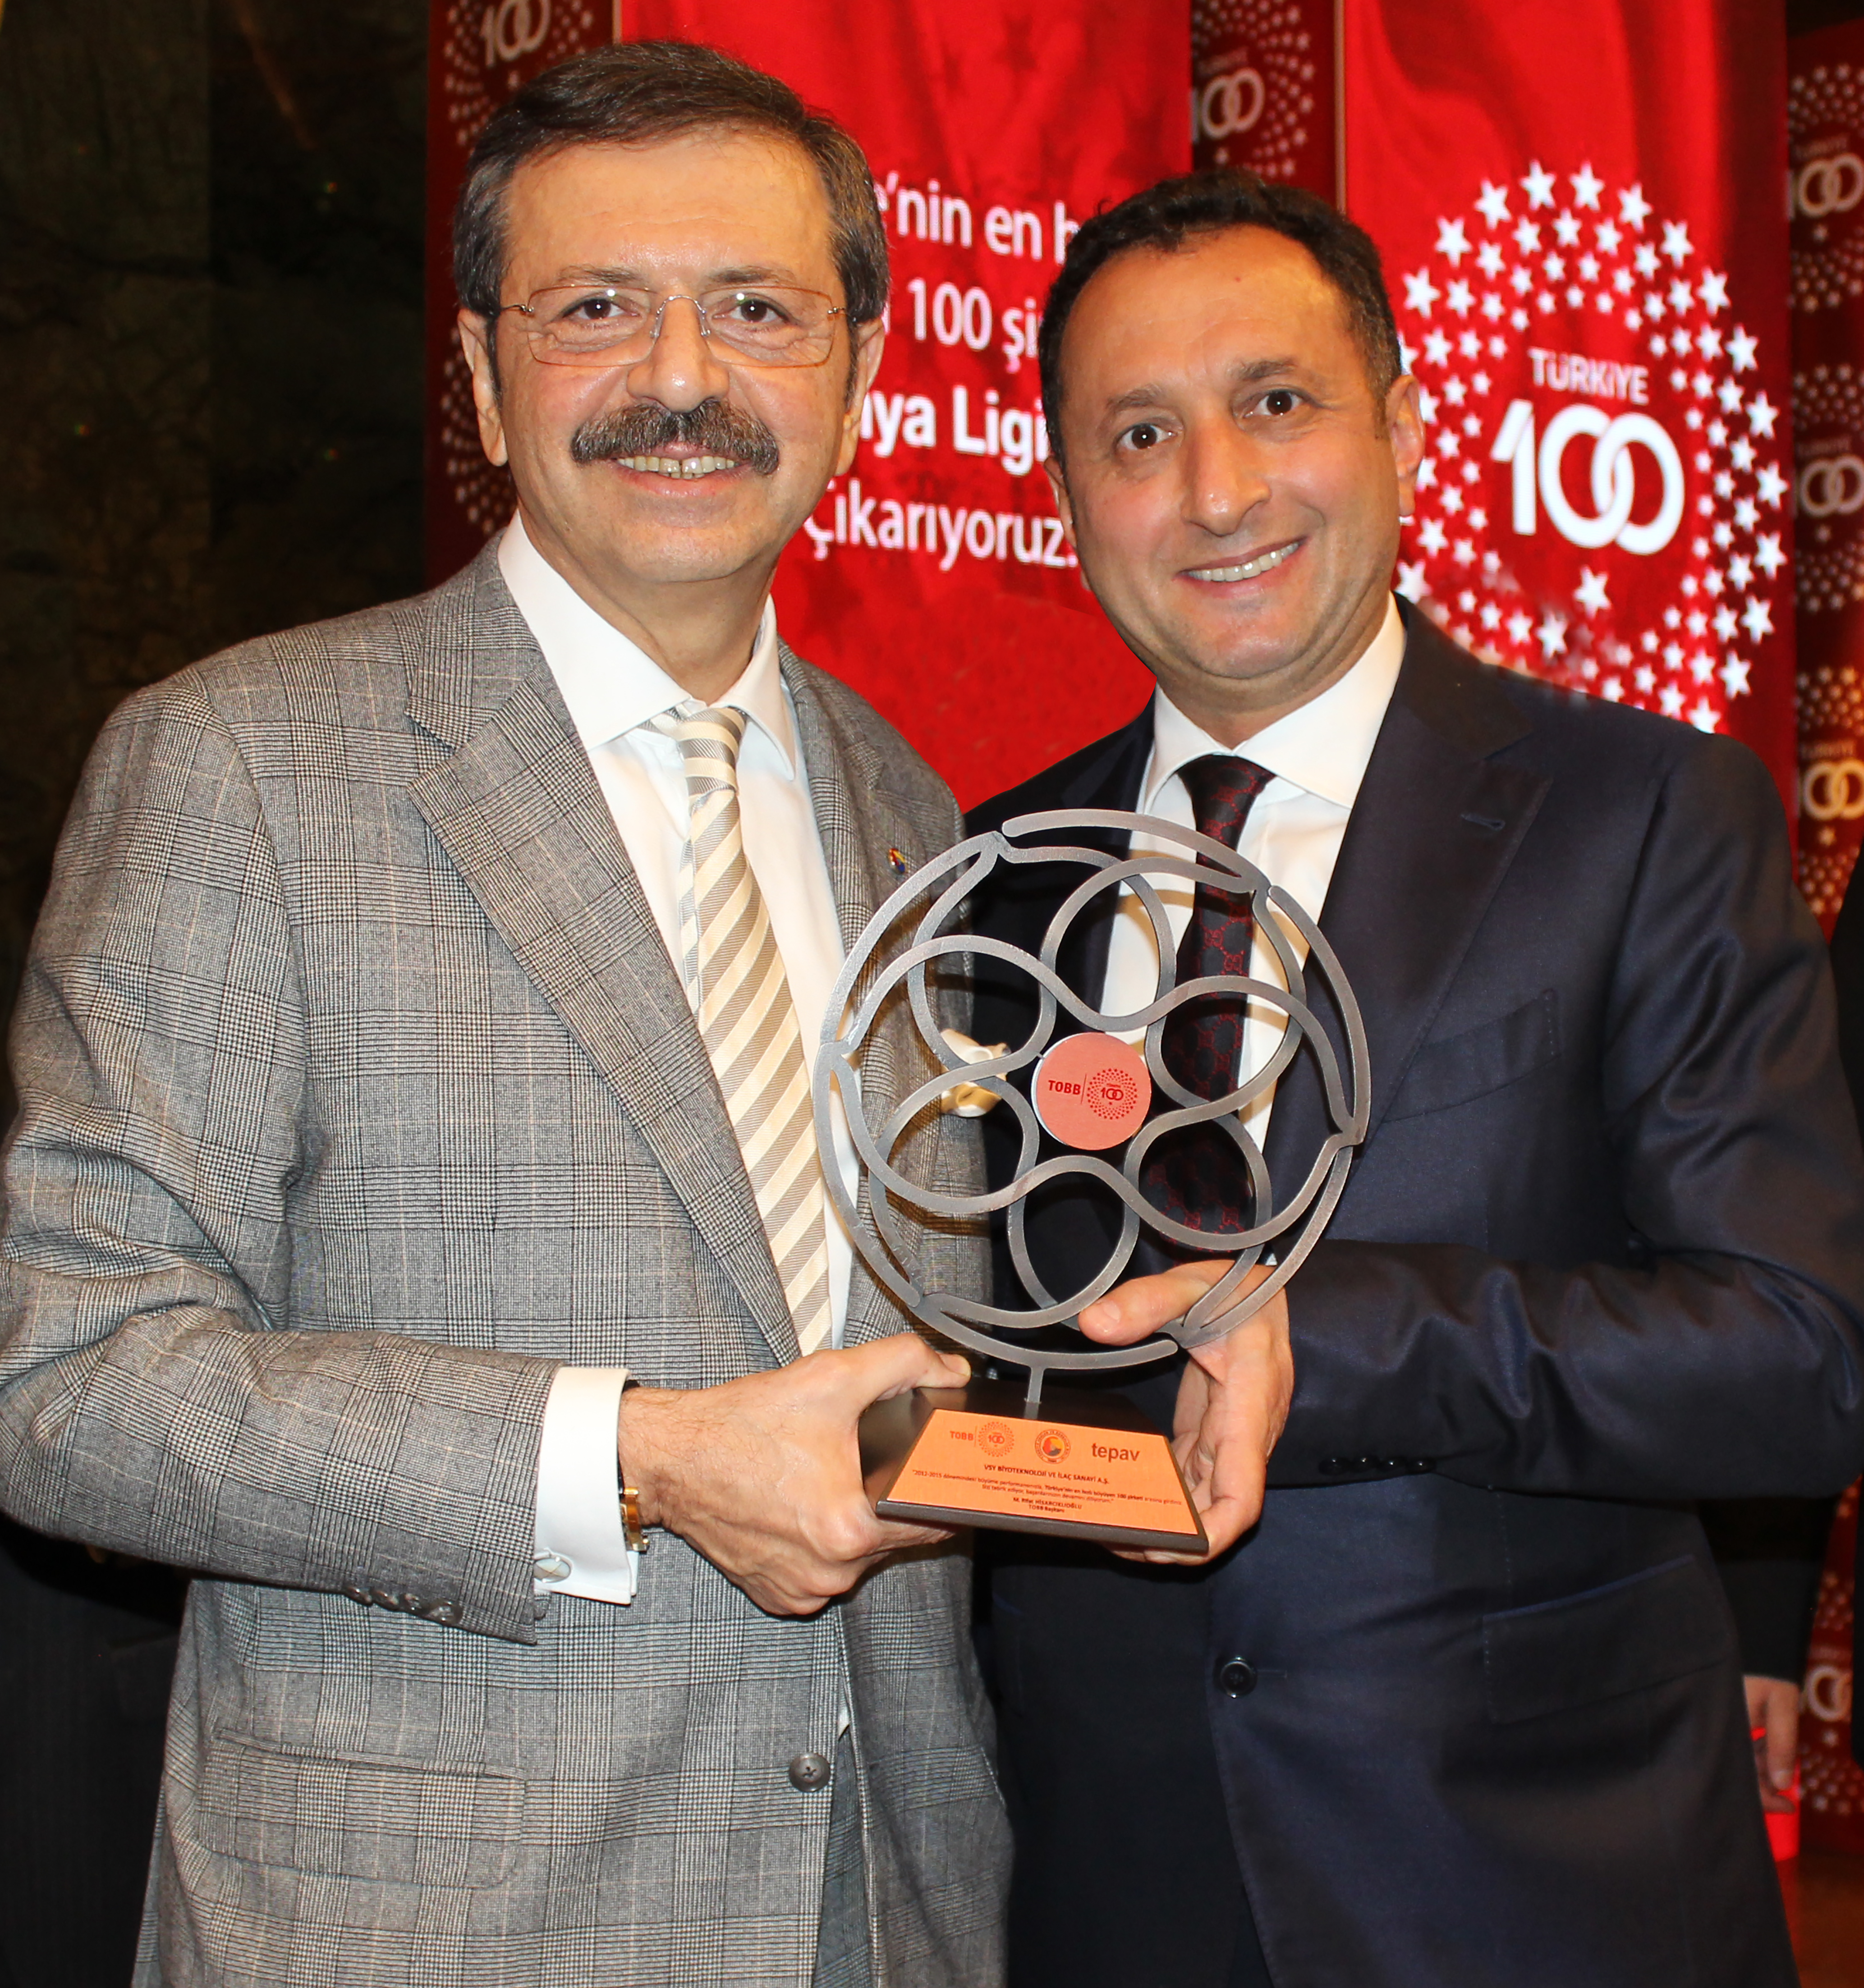 VSY Biotechnology “Türkiye’nin En Hızlı Büyüyen Şirketleri” Ödülü’nün Sahibi Oldu